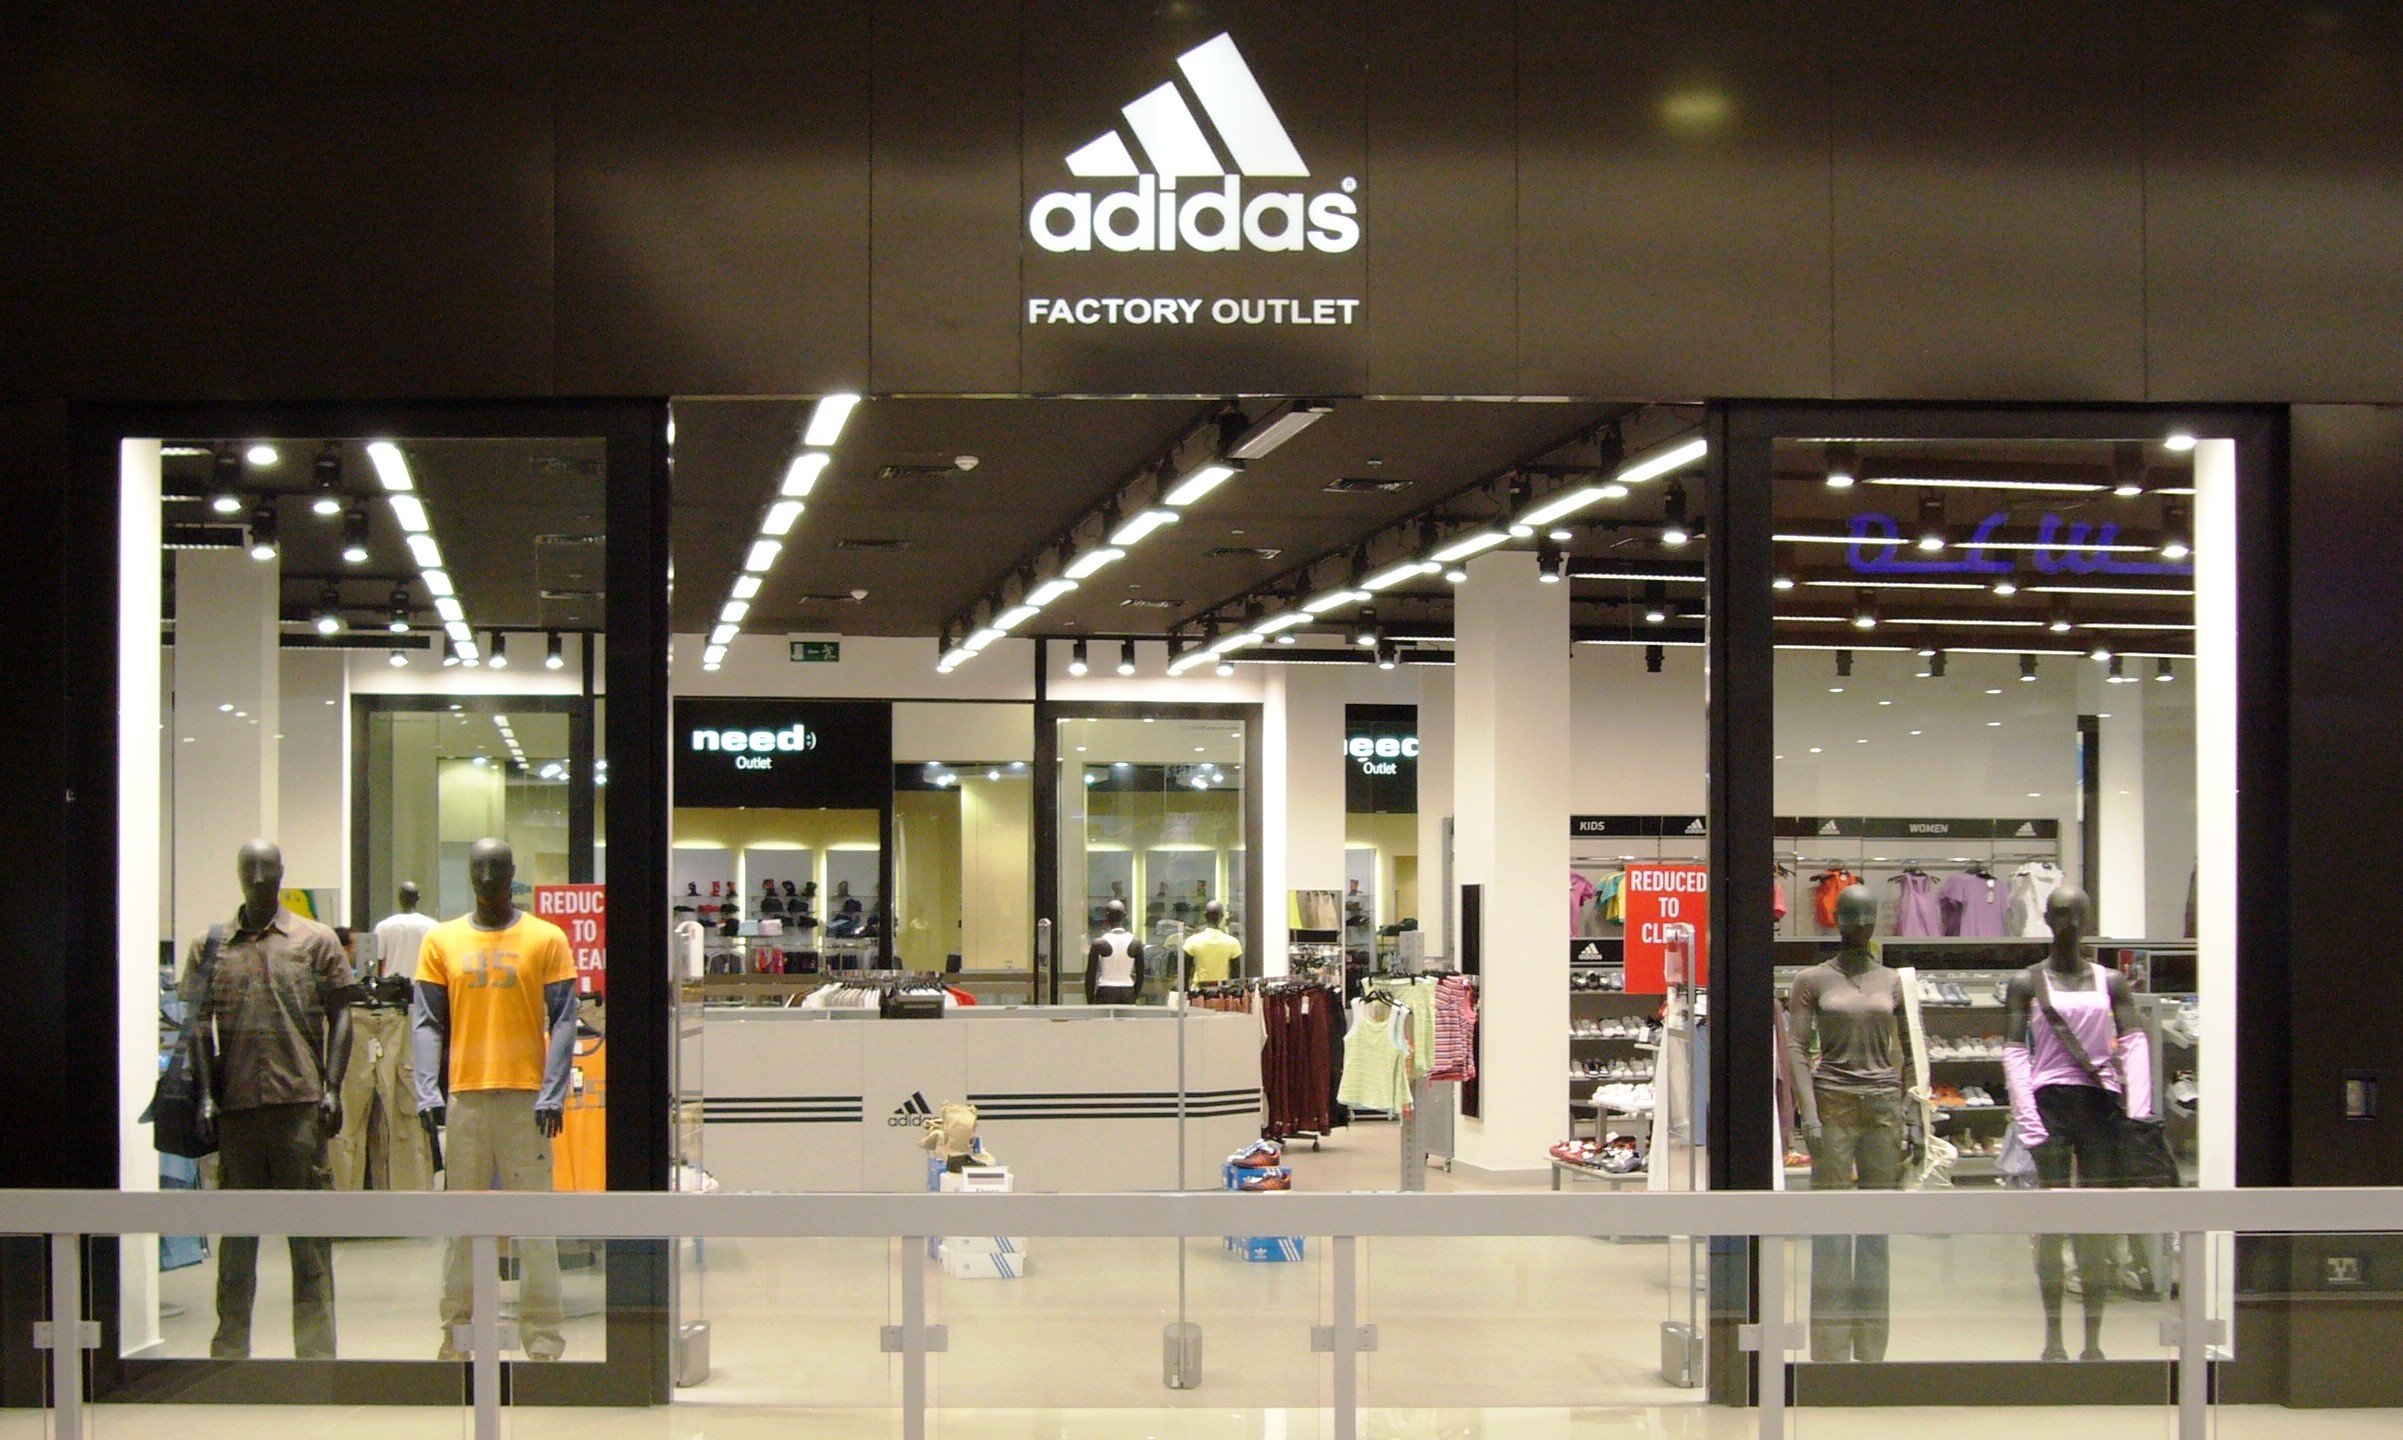 adidas_factory_outlet | Dubai Shopping Guide